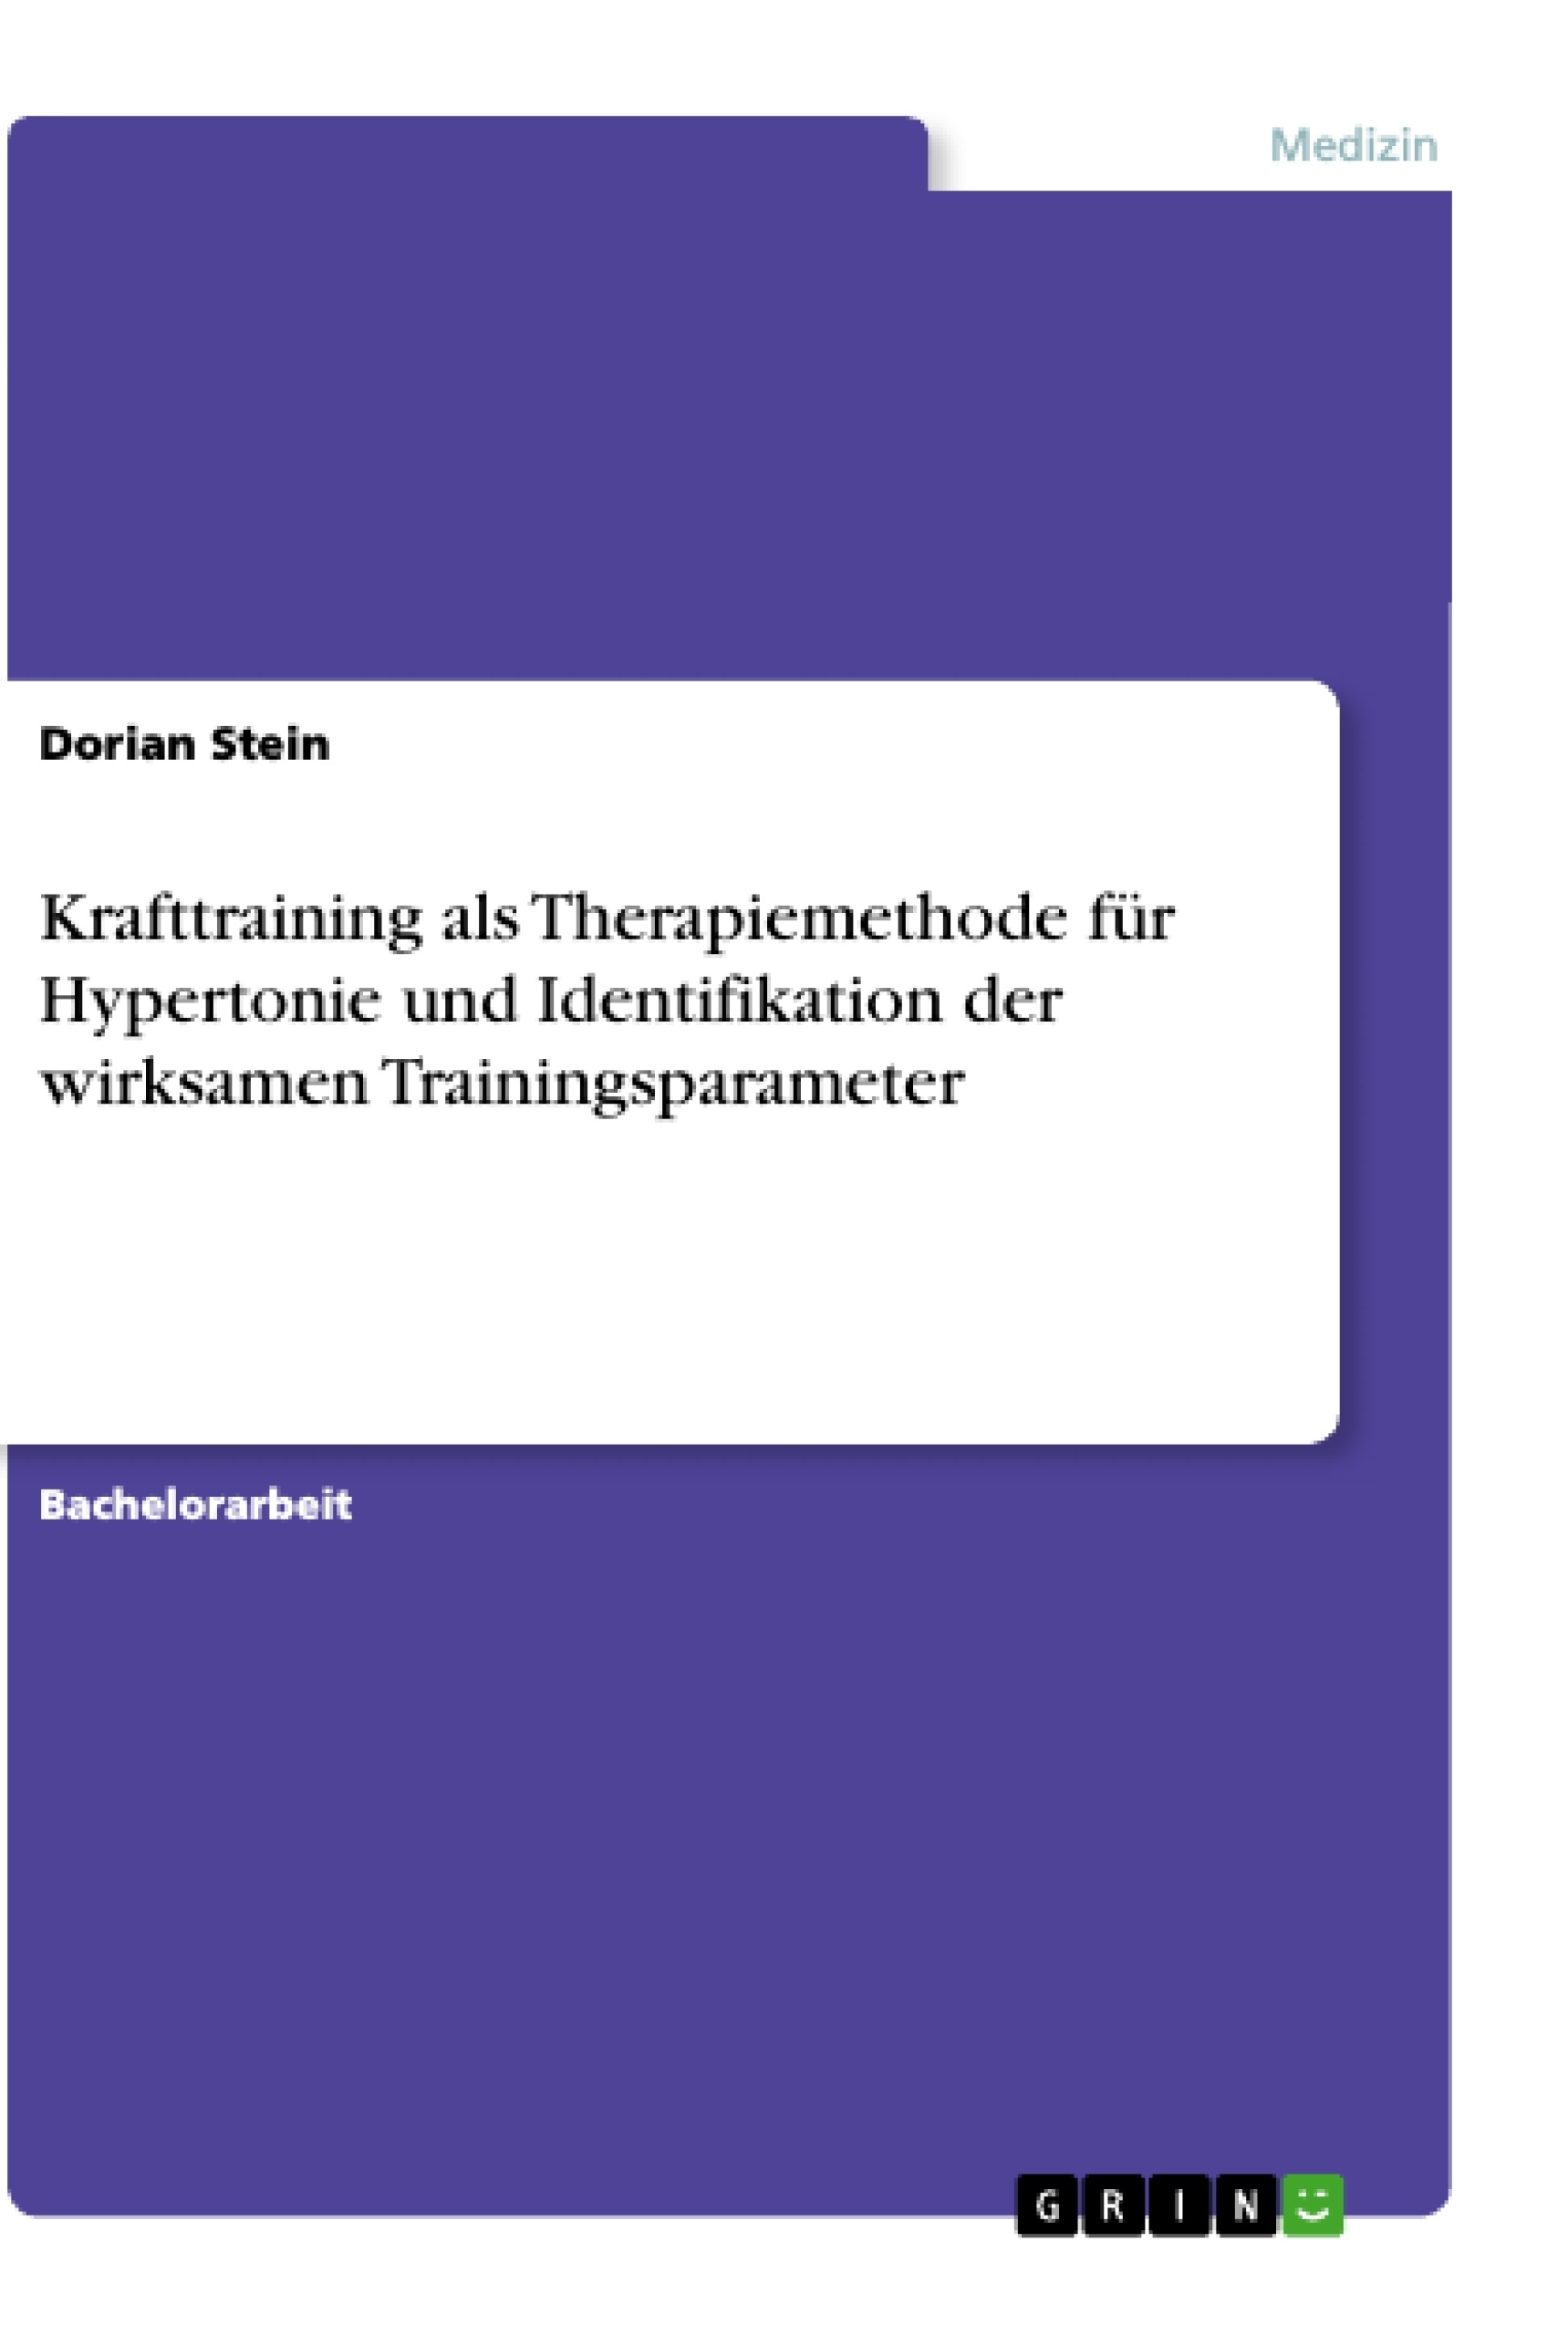 Title: Krafttraining als Therapiemethode für Hypertonie und Identifikation der wirksamen Trainingsparameter